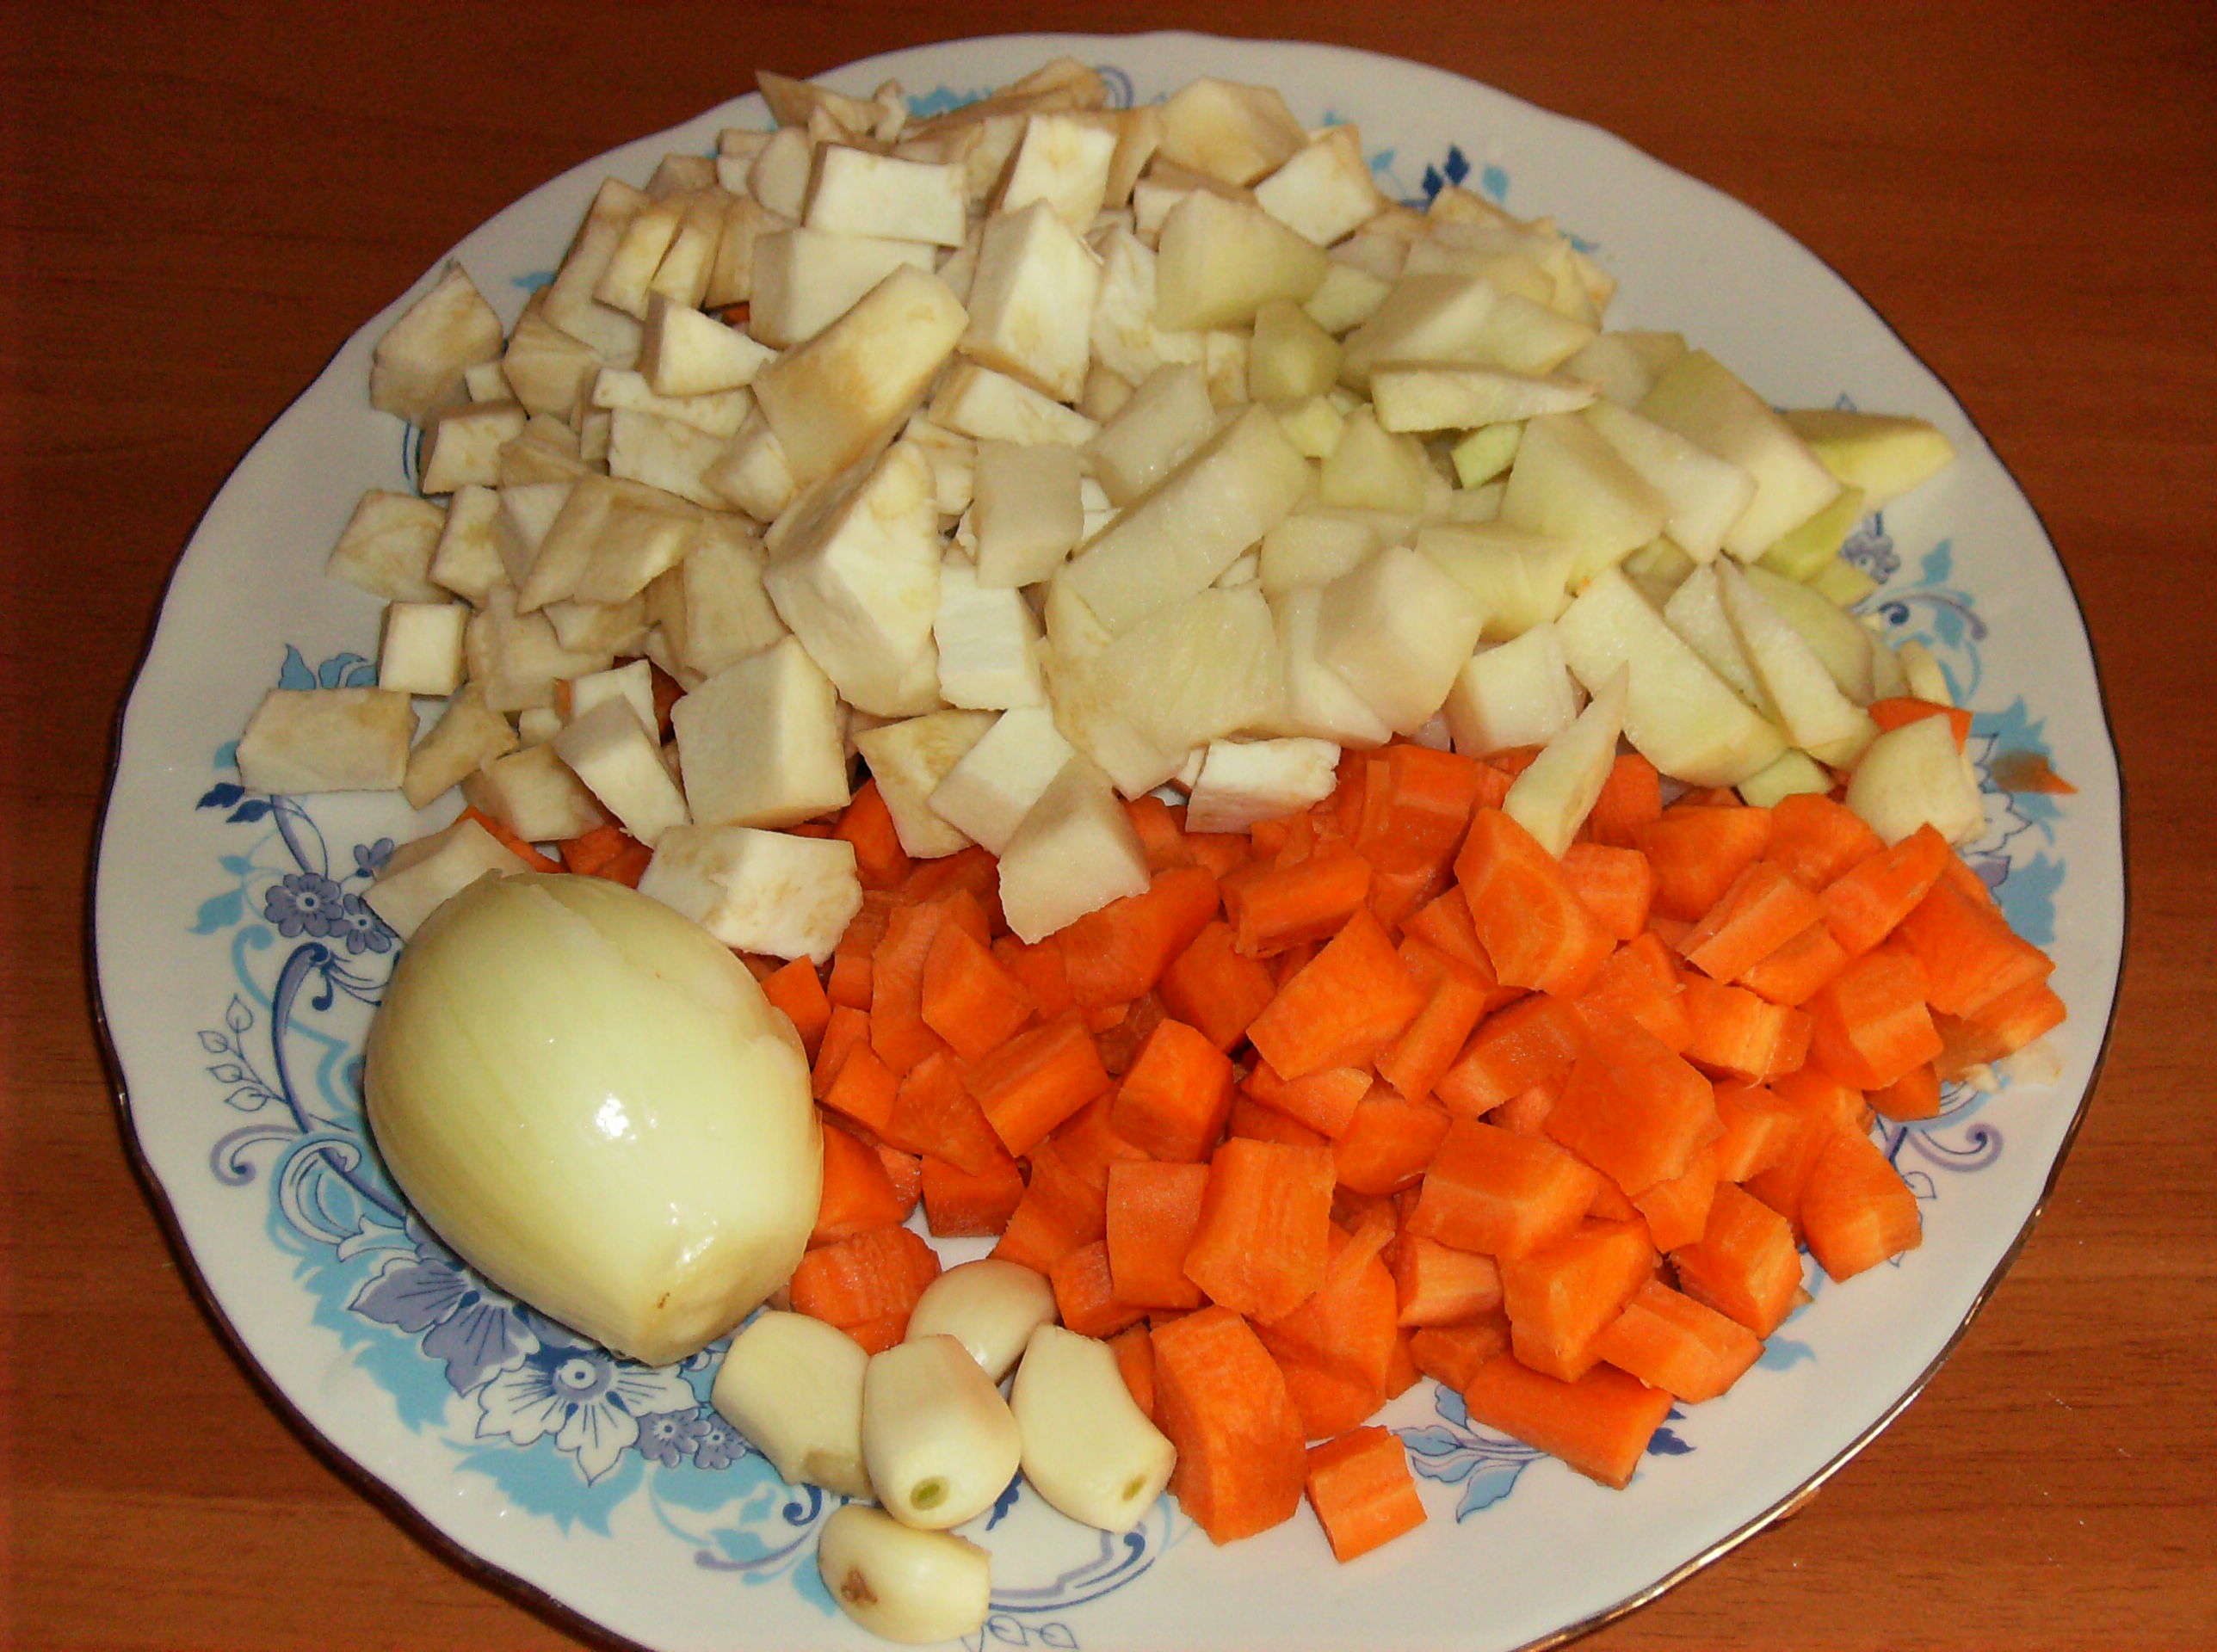 Supa de pasare cu legume